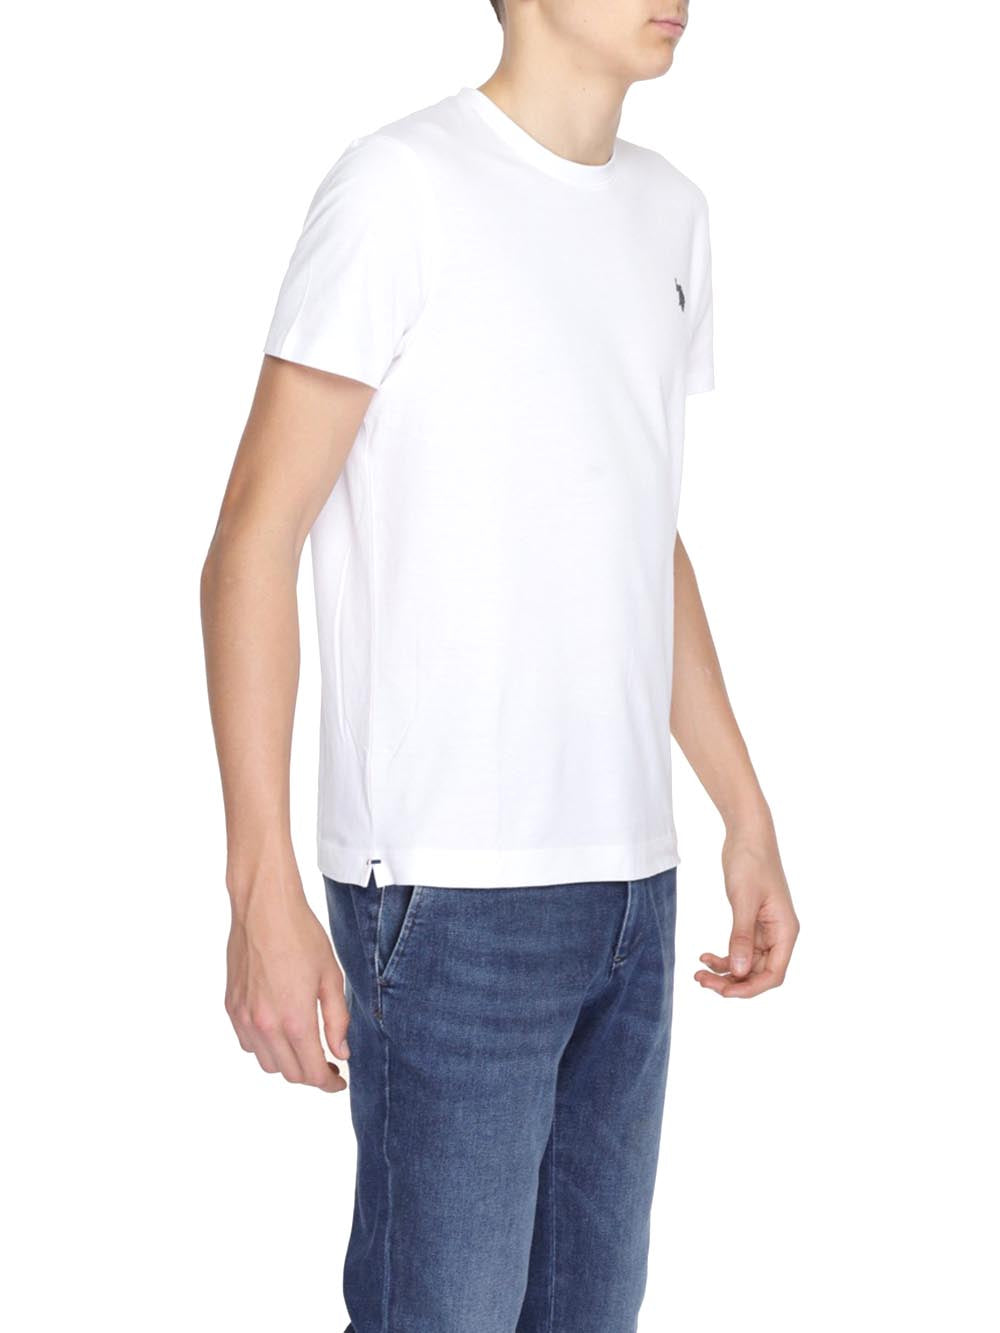 U.S. Polo Assn. T-shirt Uomo Mick 67578 53565 Bianco